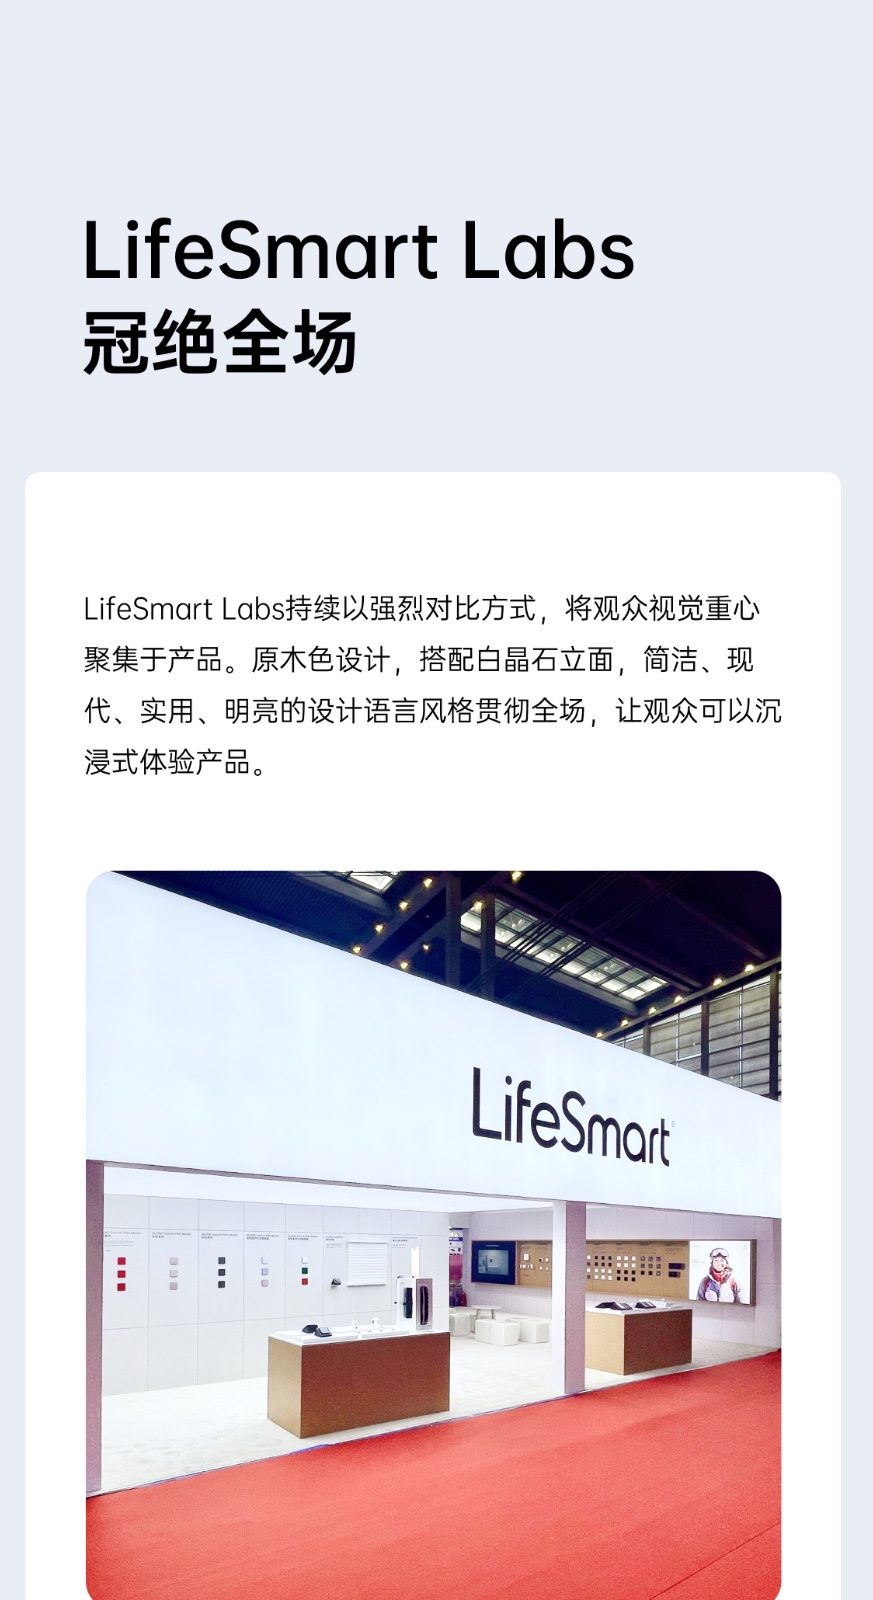 全行业最佳伴侣，LifeSmart云起亮相CPSE